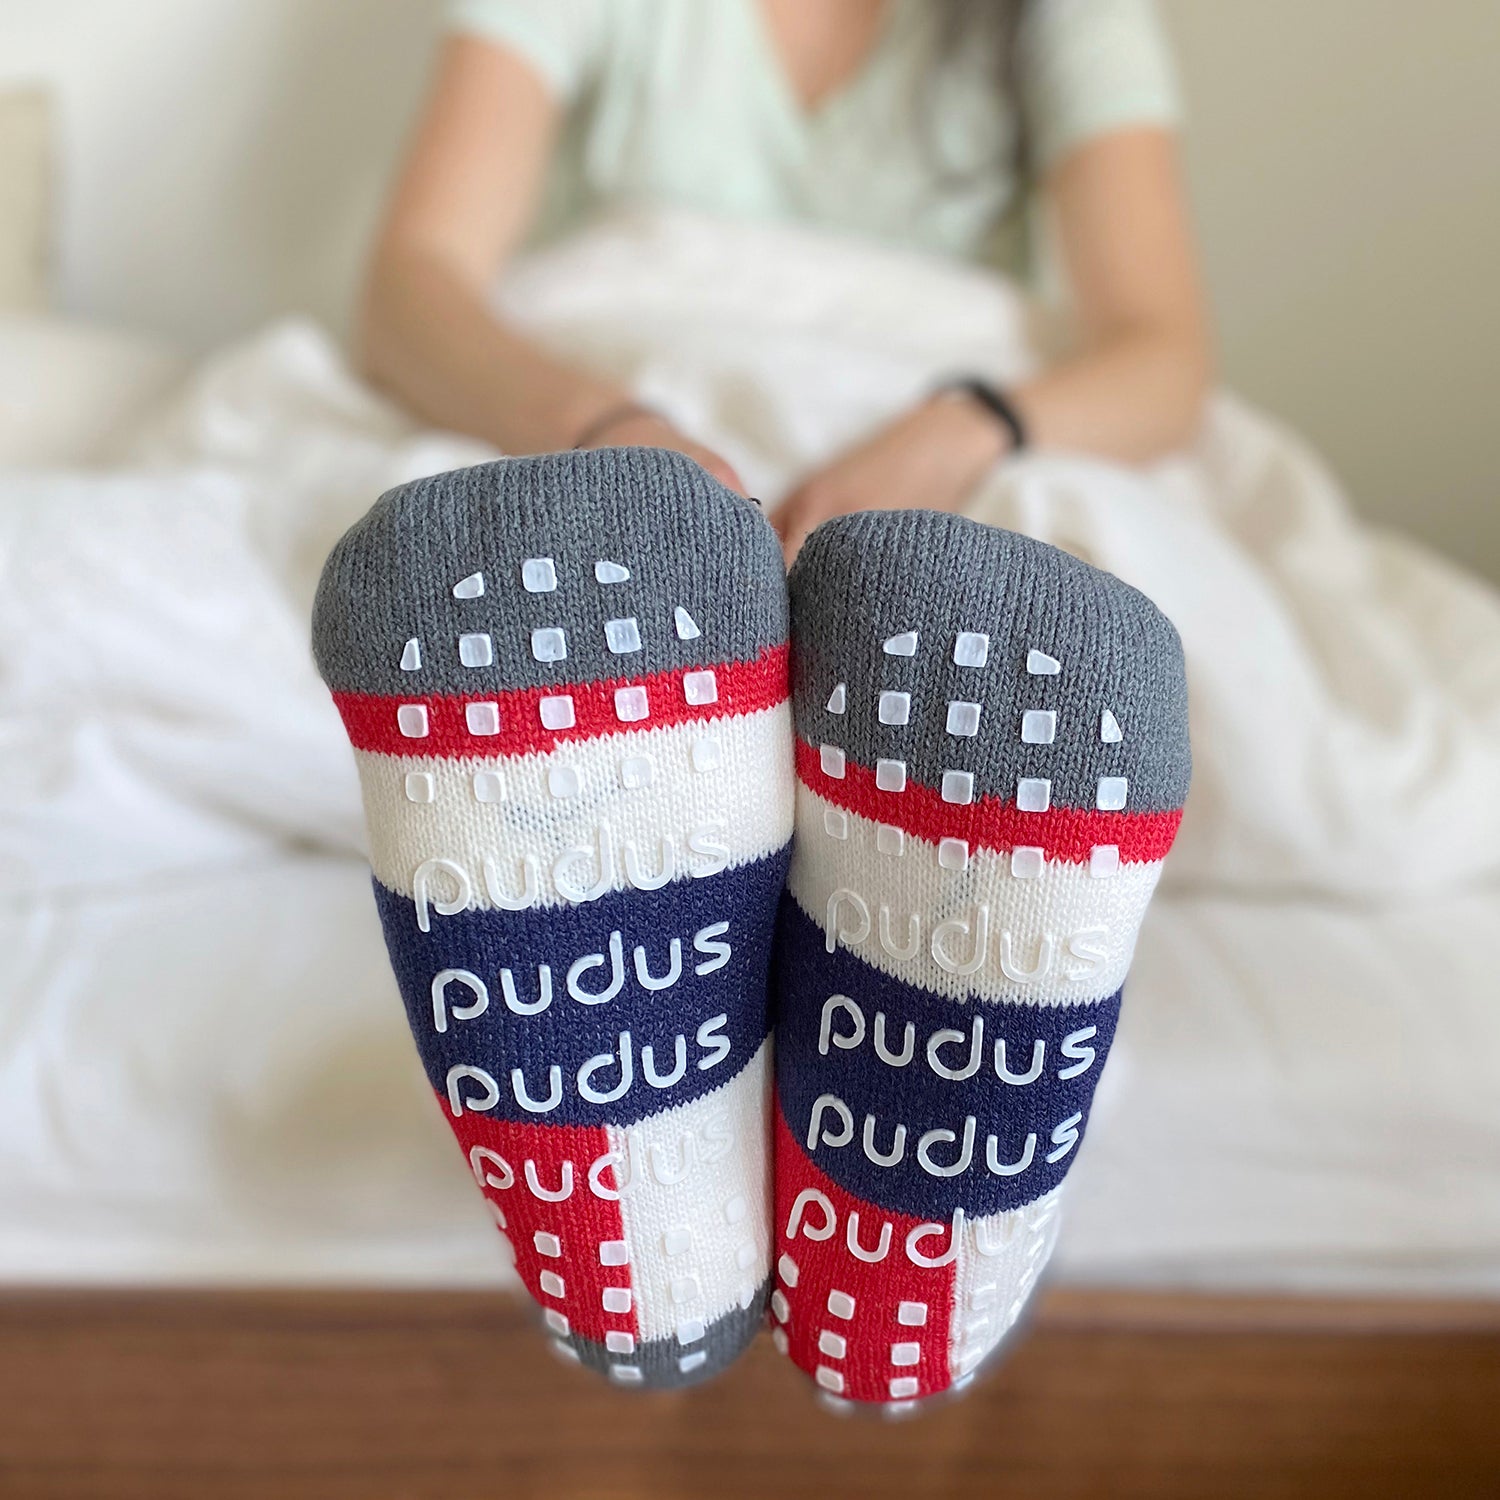 Cozy Slipper Socks, Fuzzy Anti-Slip Socks for Women Girls, Non